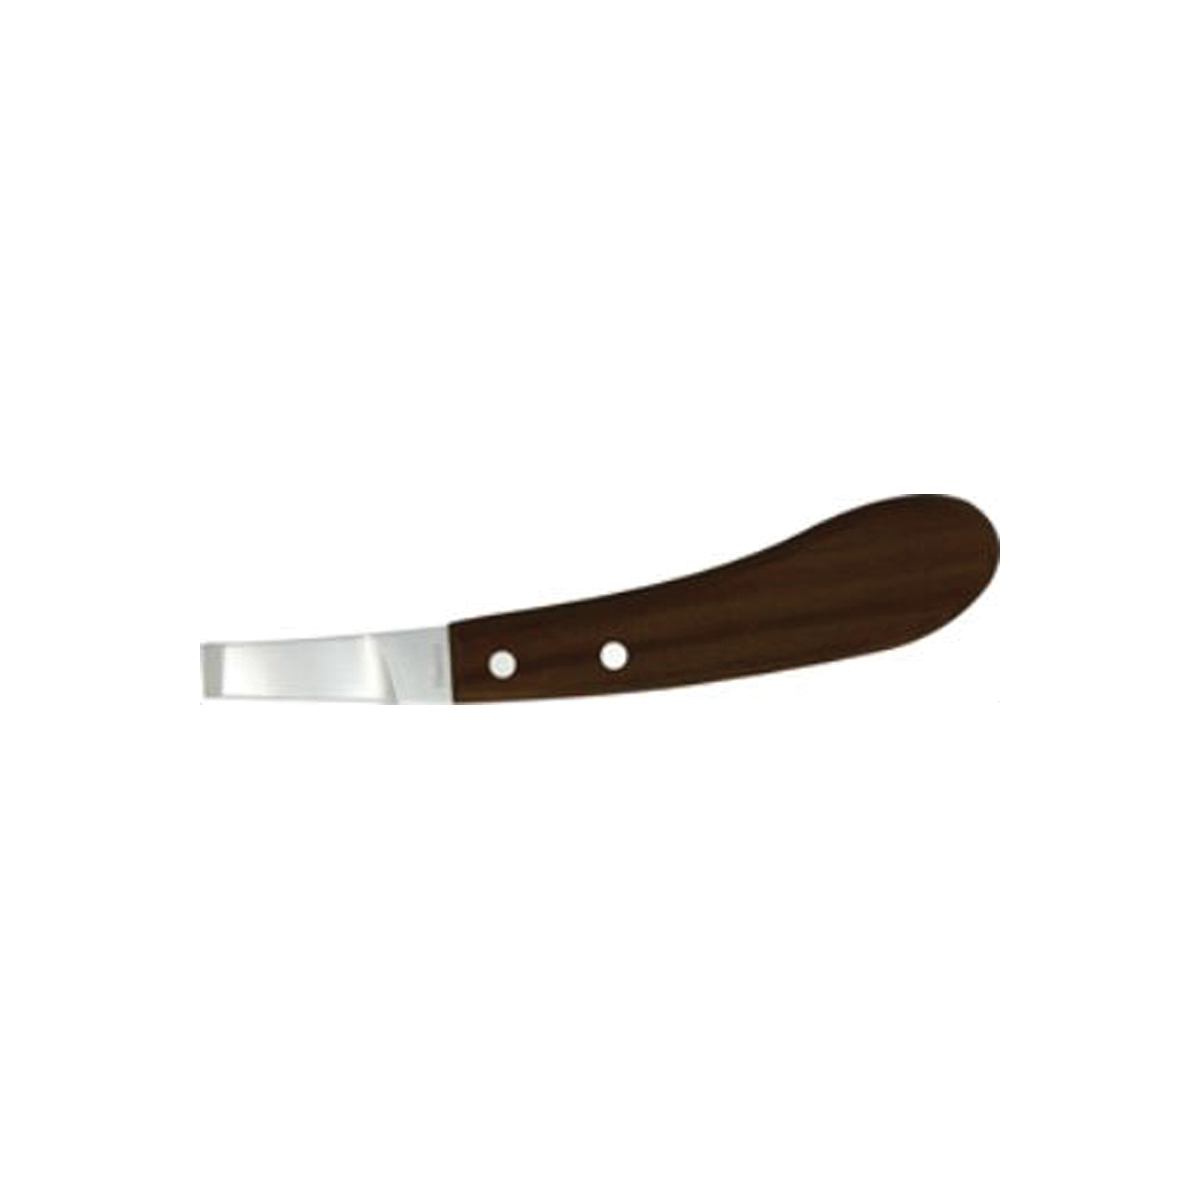 D280L Hoof Knife, Wide Blade, Stainless Steel Blade, Hardwood Handle, Comfortable-Grip Handle